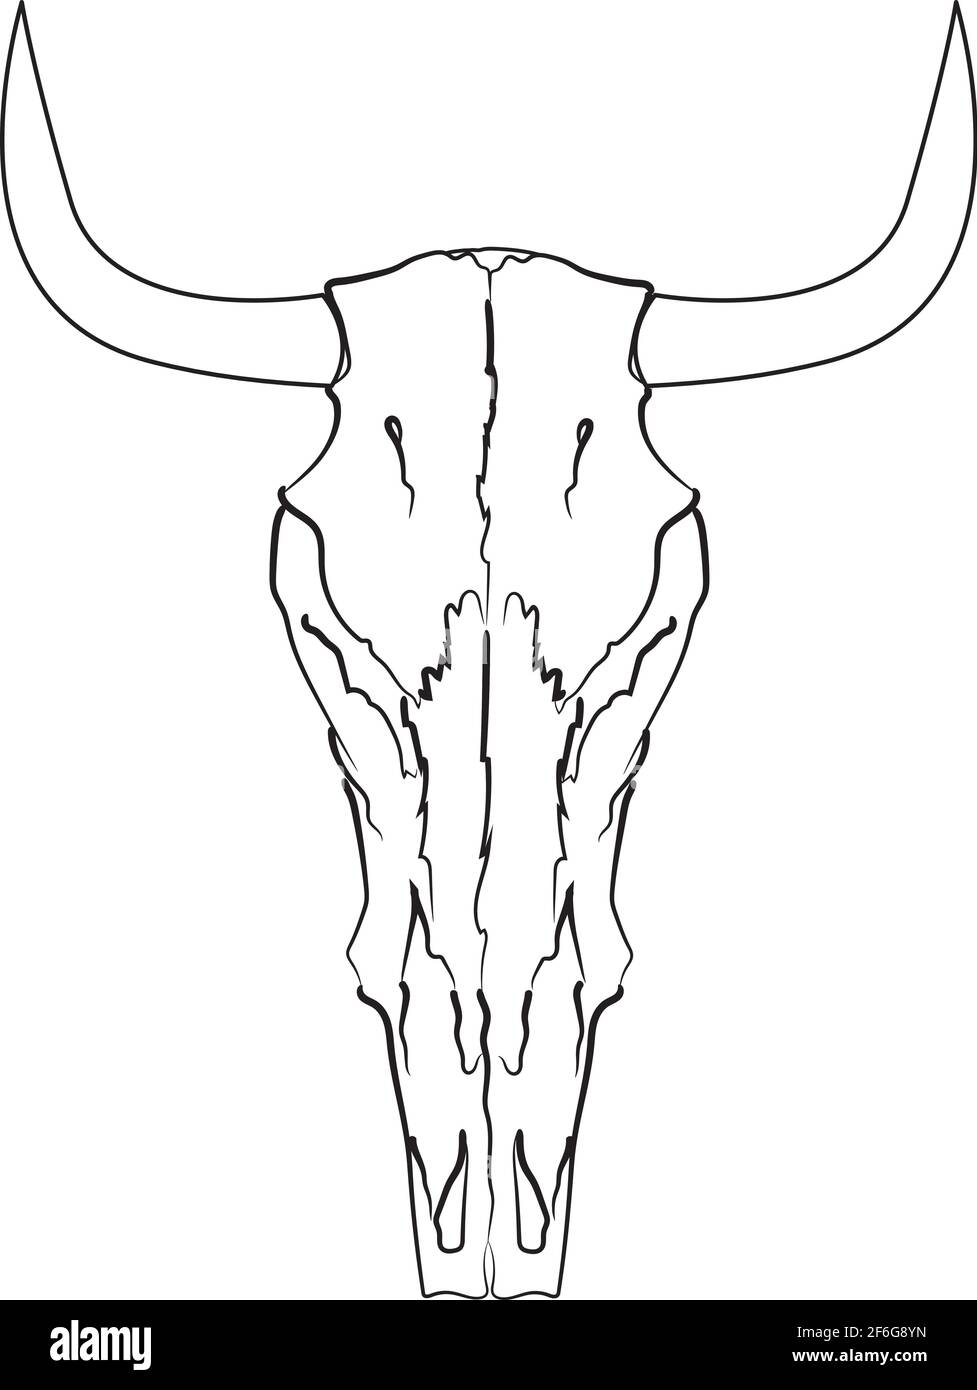 Hand drawn skull Stock Vector